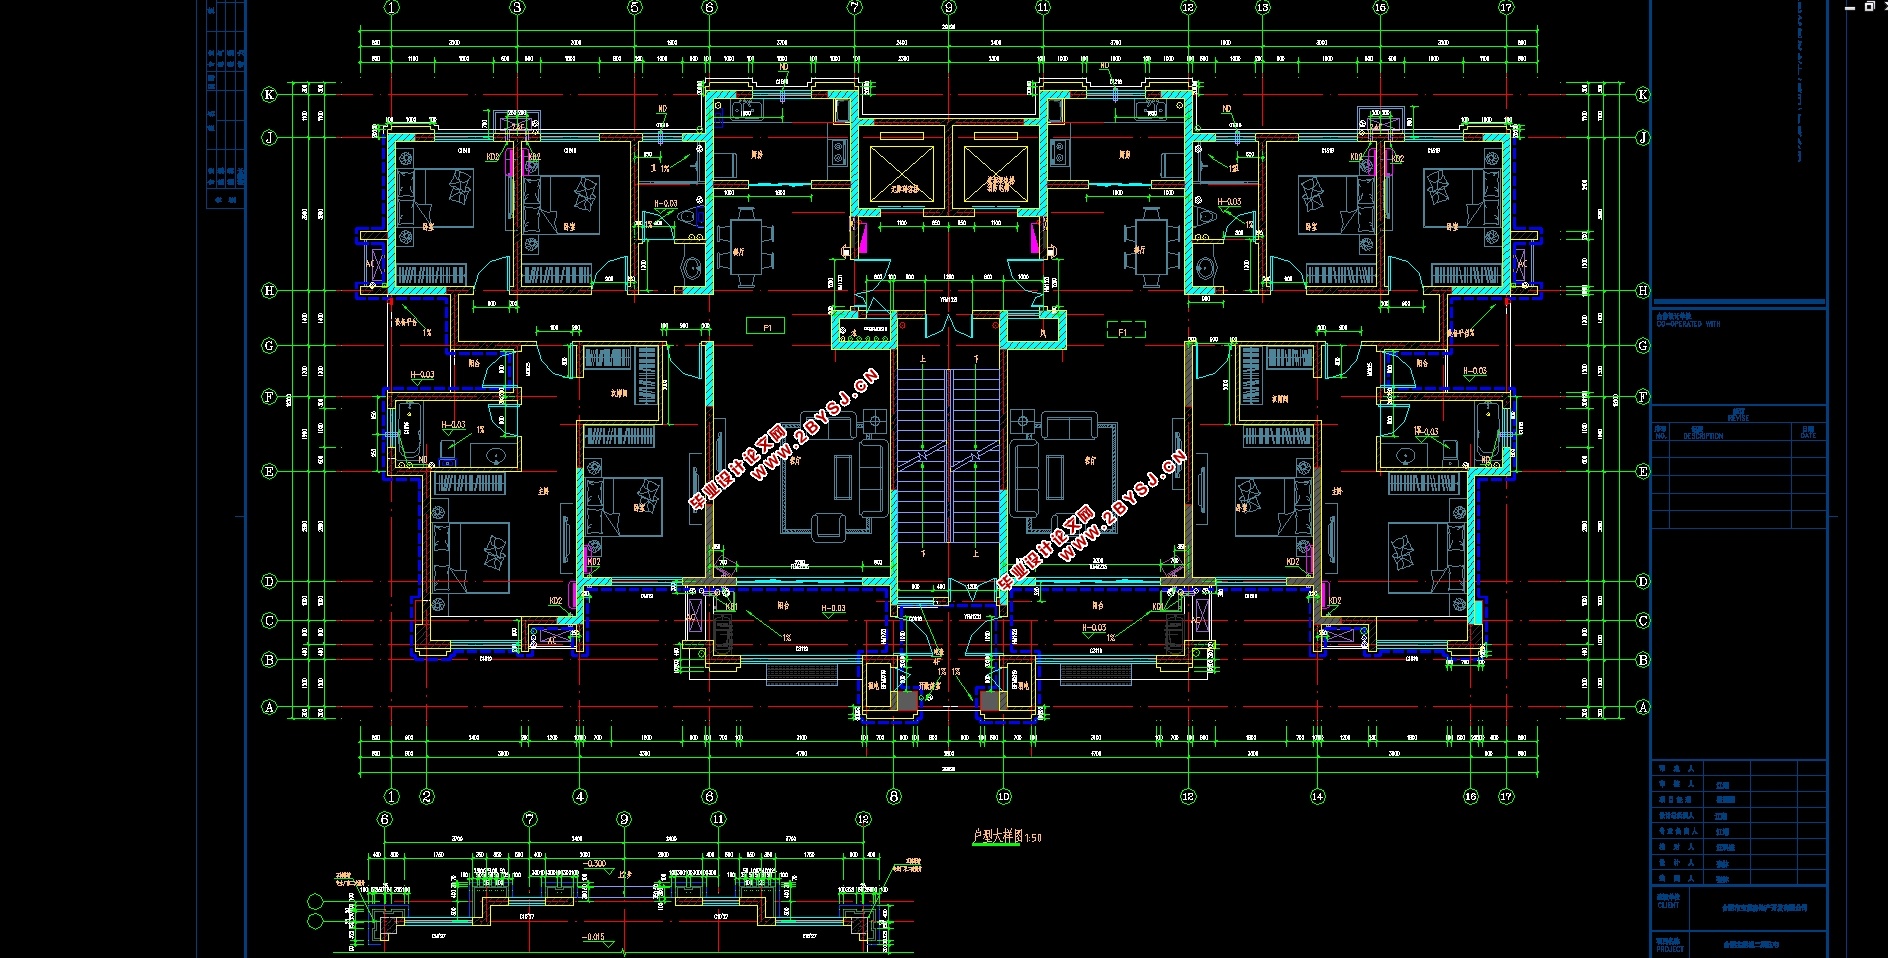 28层高层住宅楼工程施工组织设计(建筑图,总平面图,横道图,网络图)